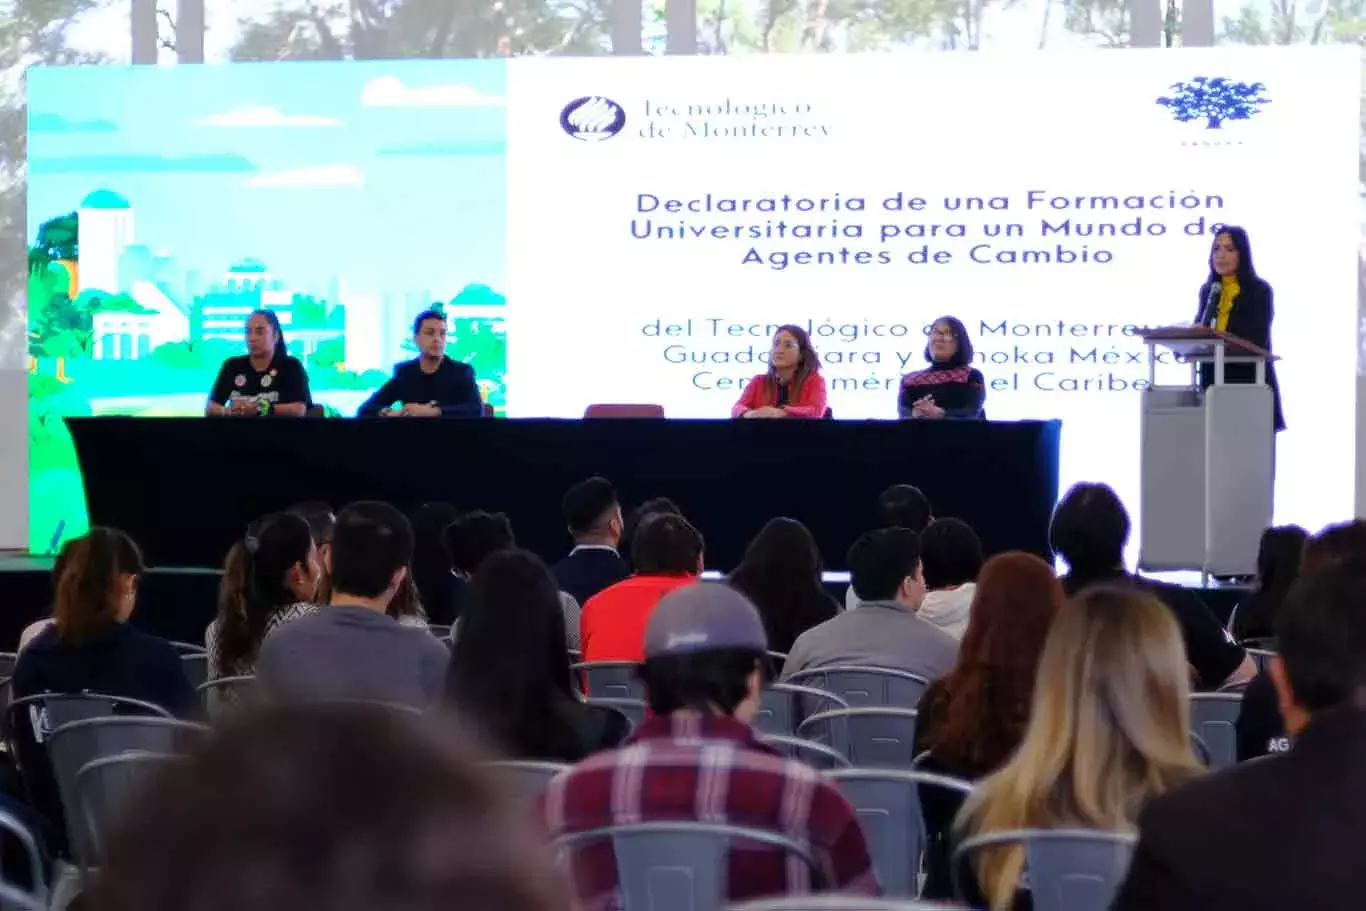 Changemaker fest, festival de emprendimiento social del Tec Guadalajara.